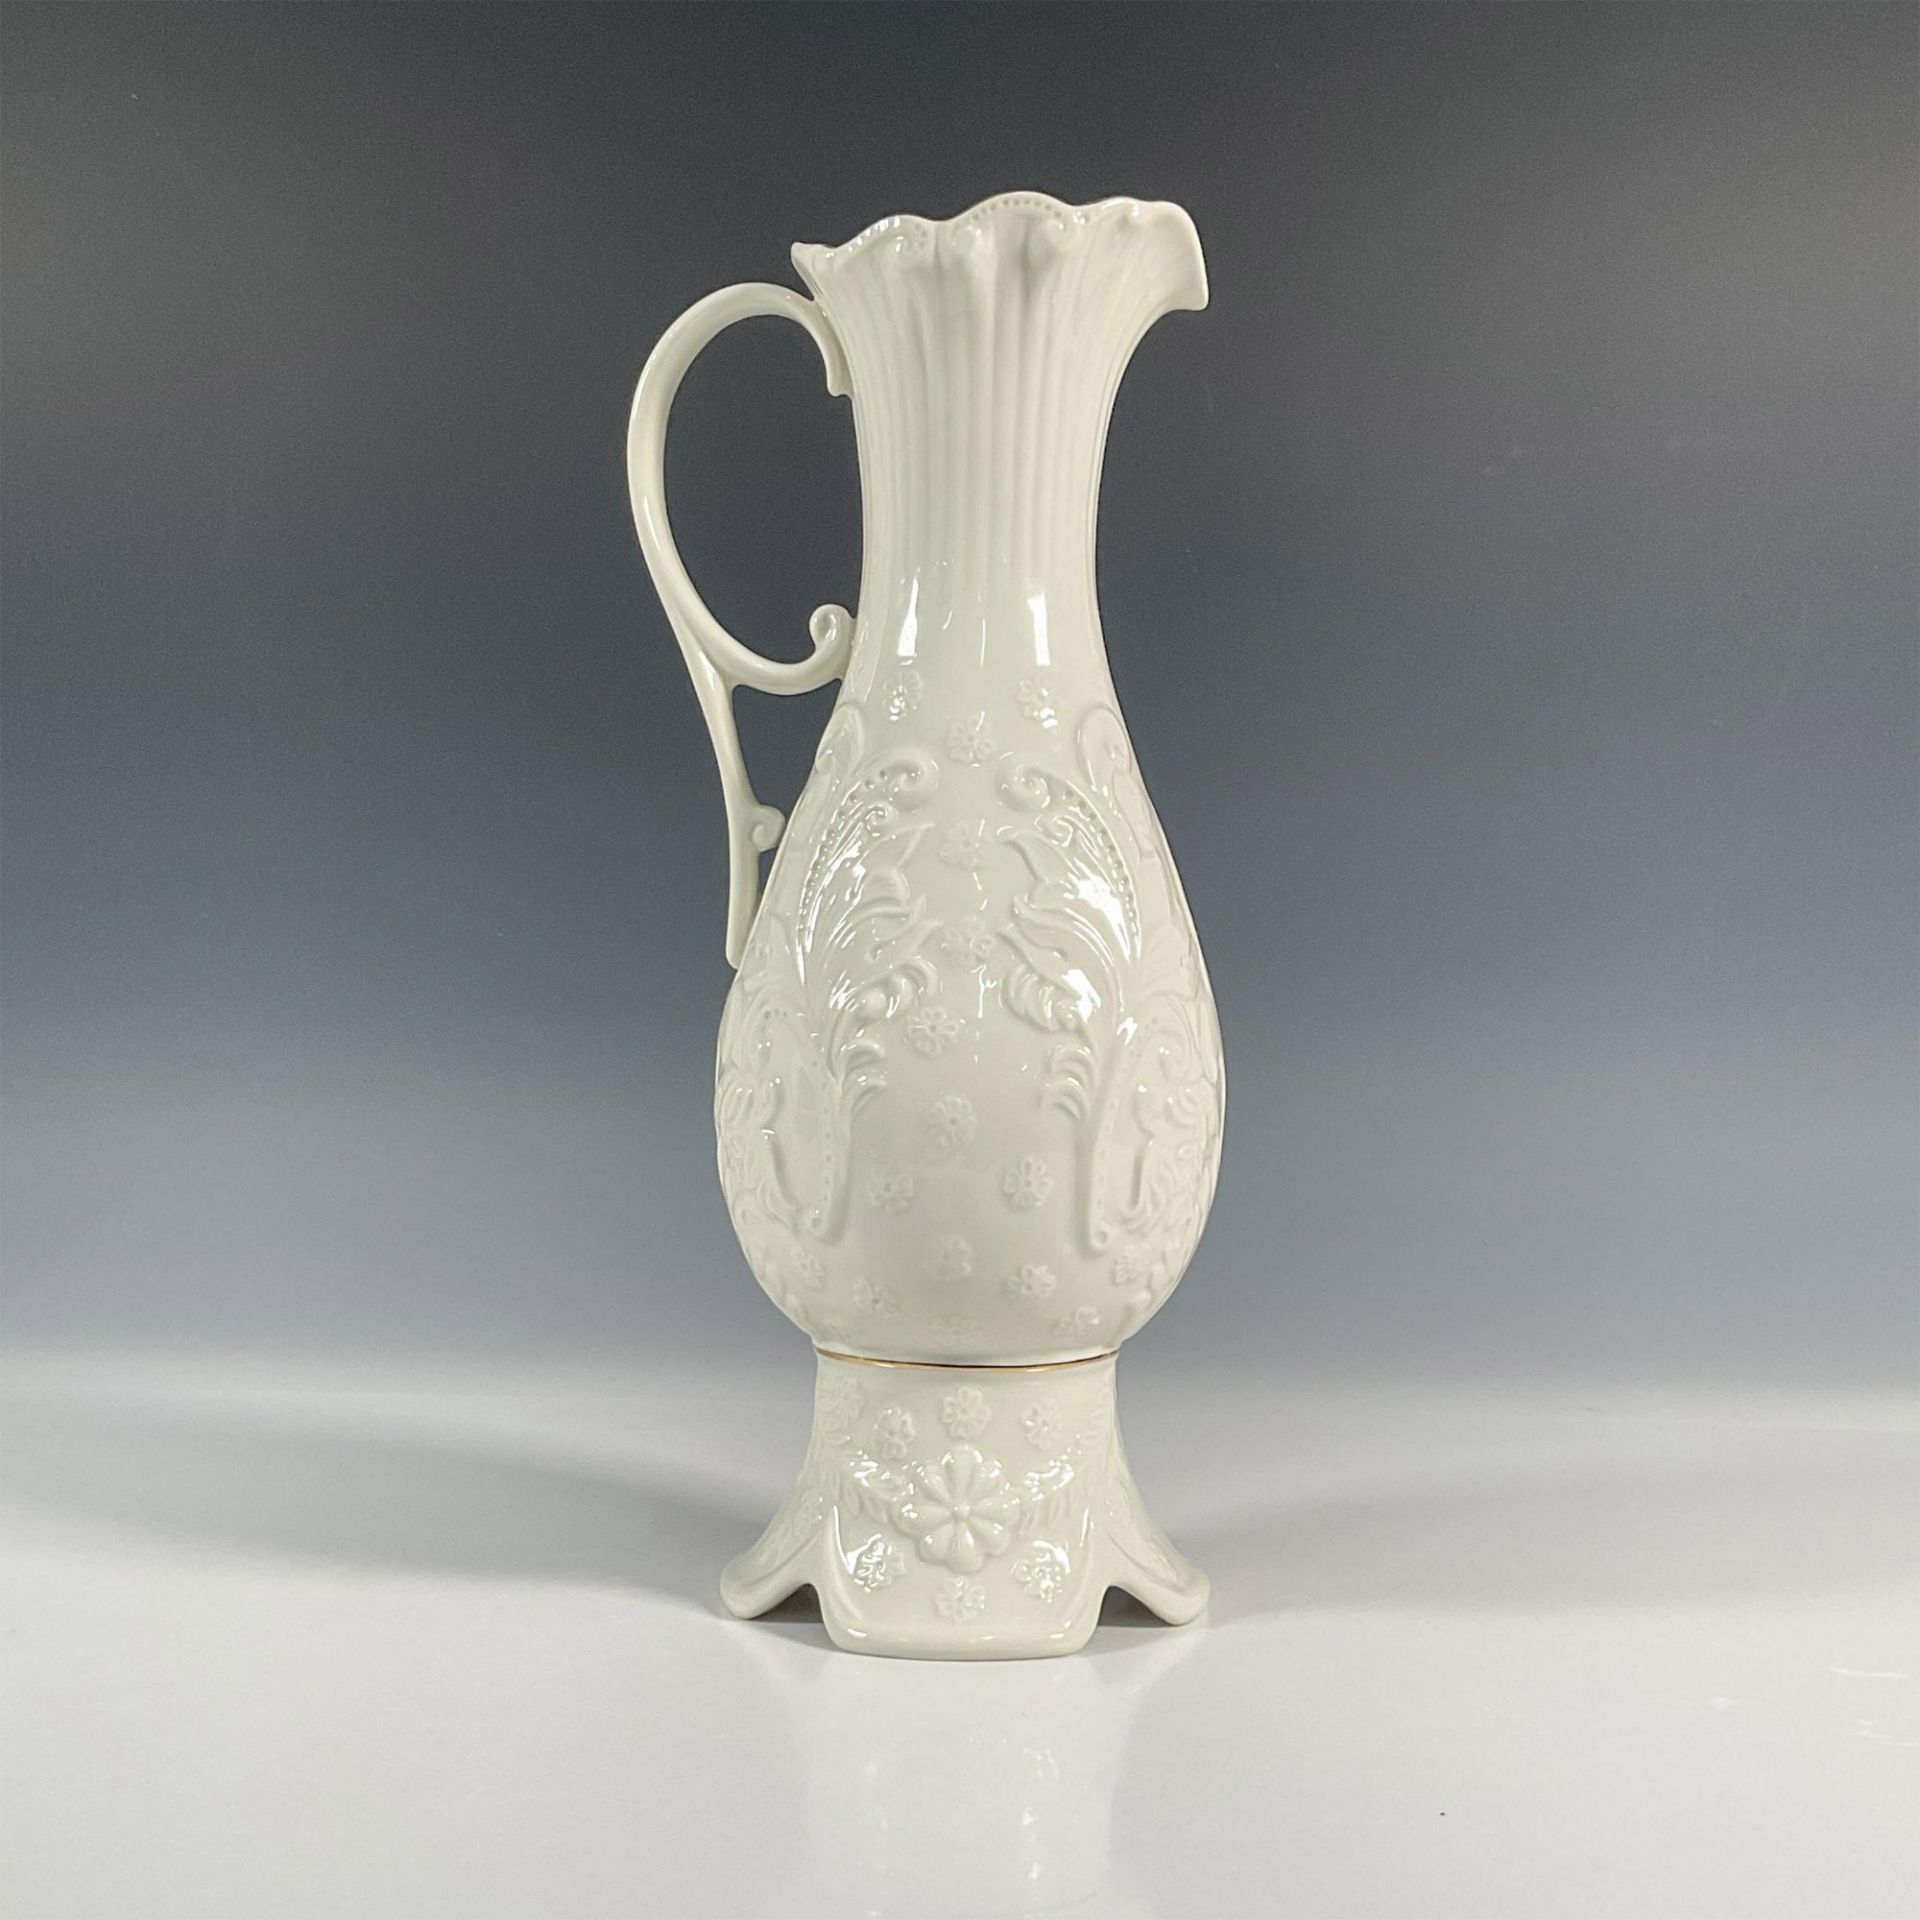 Belleek Pottery Porcelain Pitcher, Eros - Image 2 of 5